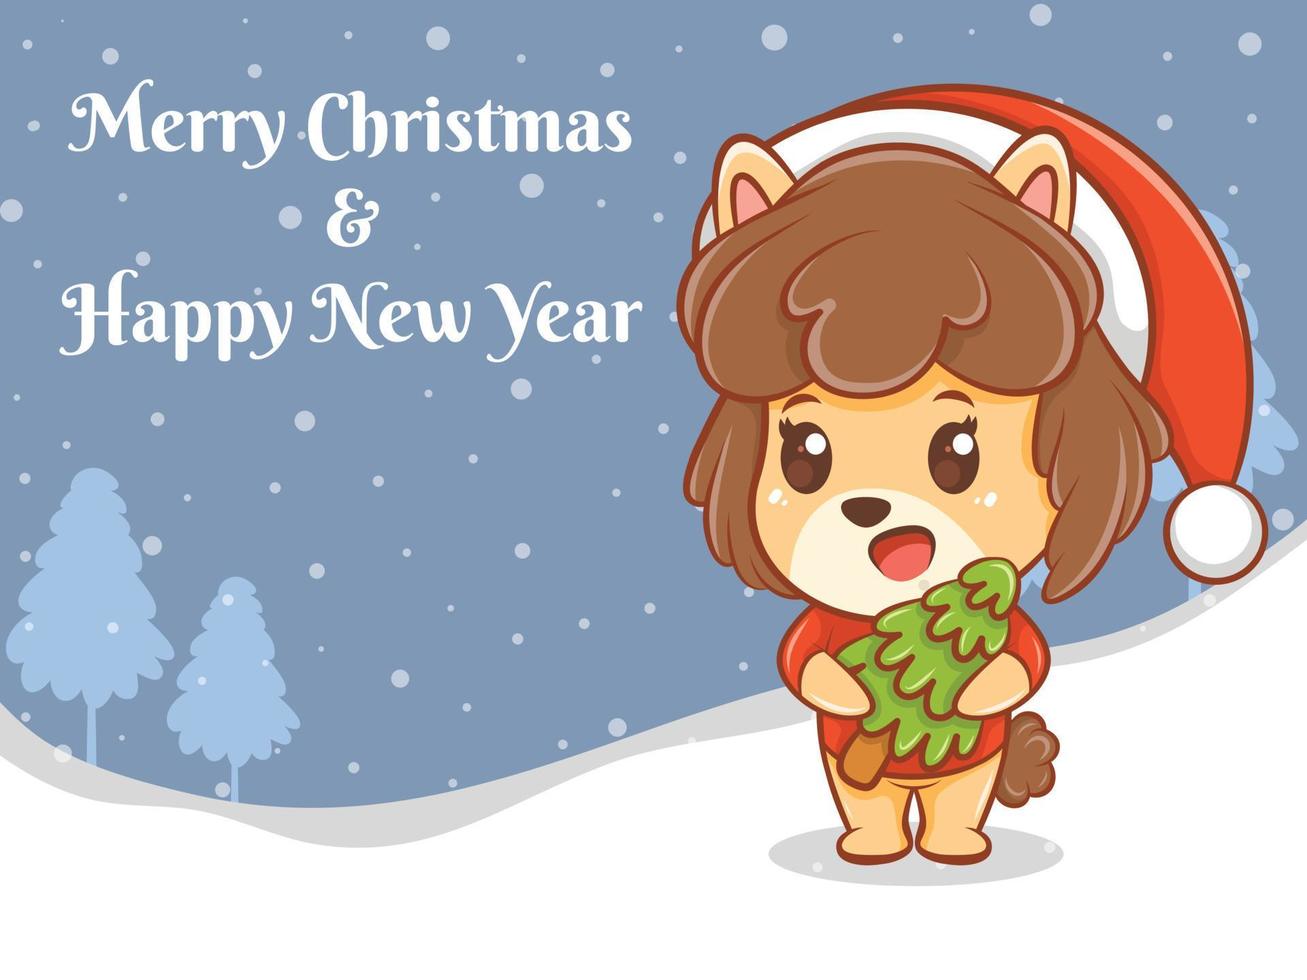 Lindo personaje de dibujos animados de cachorro con feliz navidad y feliz año nuevo saludo banner. vector